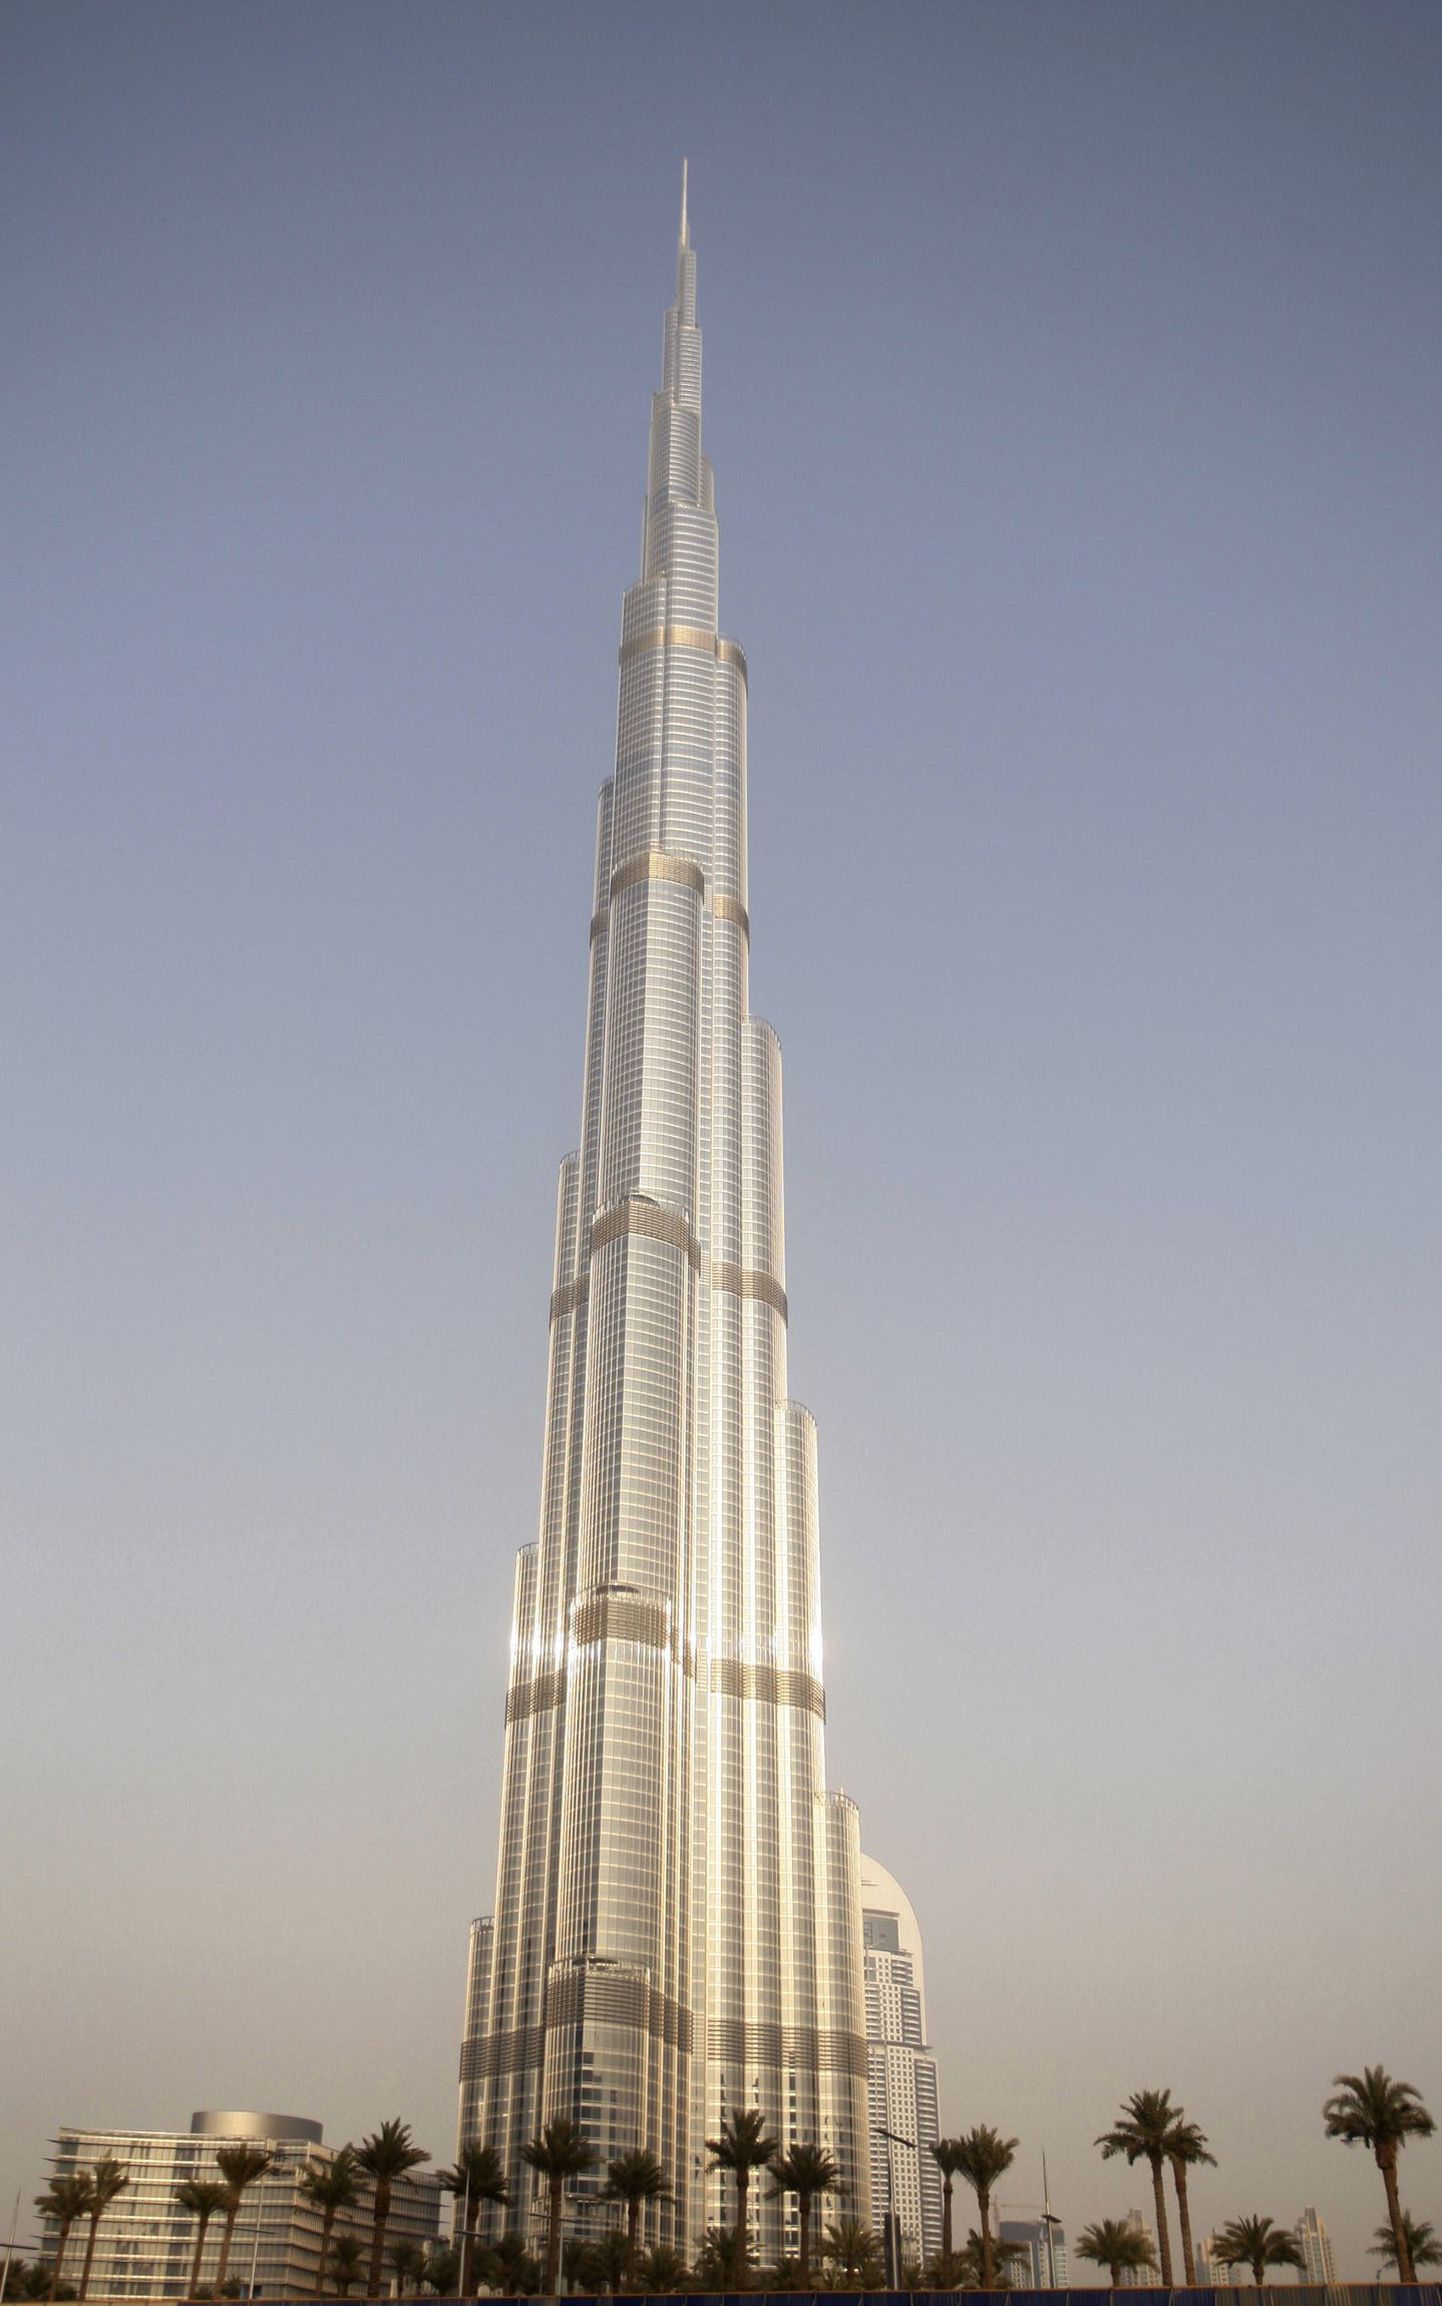 Maailma kõrgeim hoone, 828 meetri kõrgune Burj Khalifa.